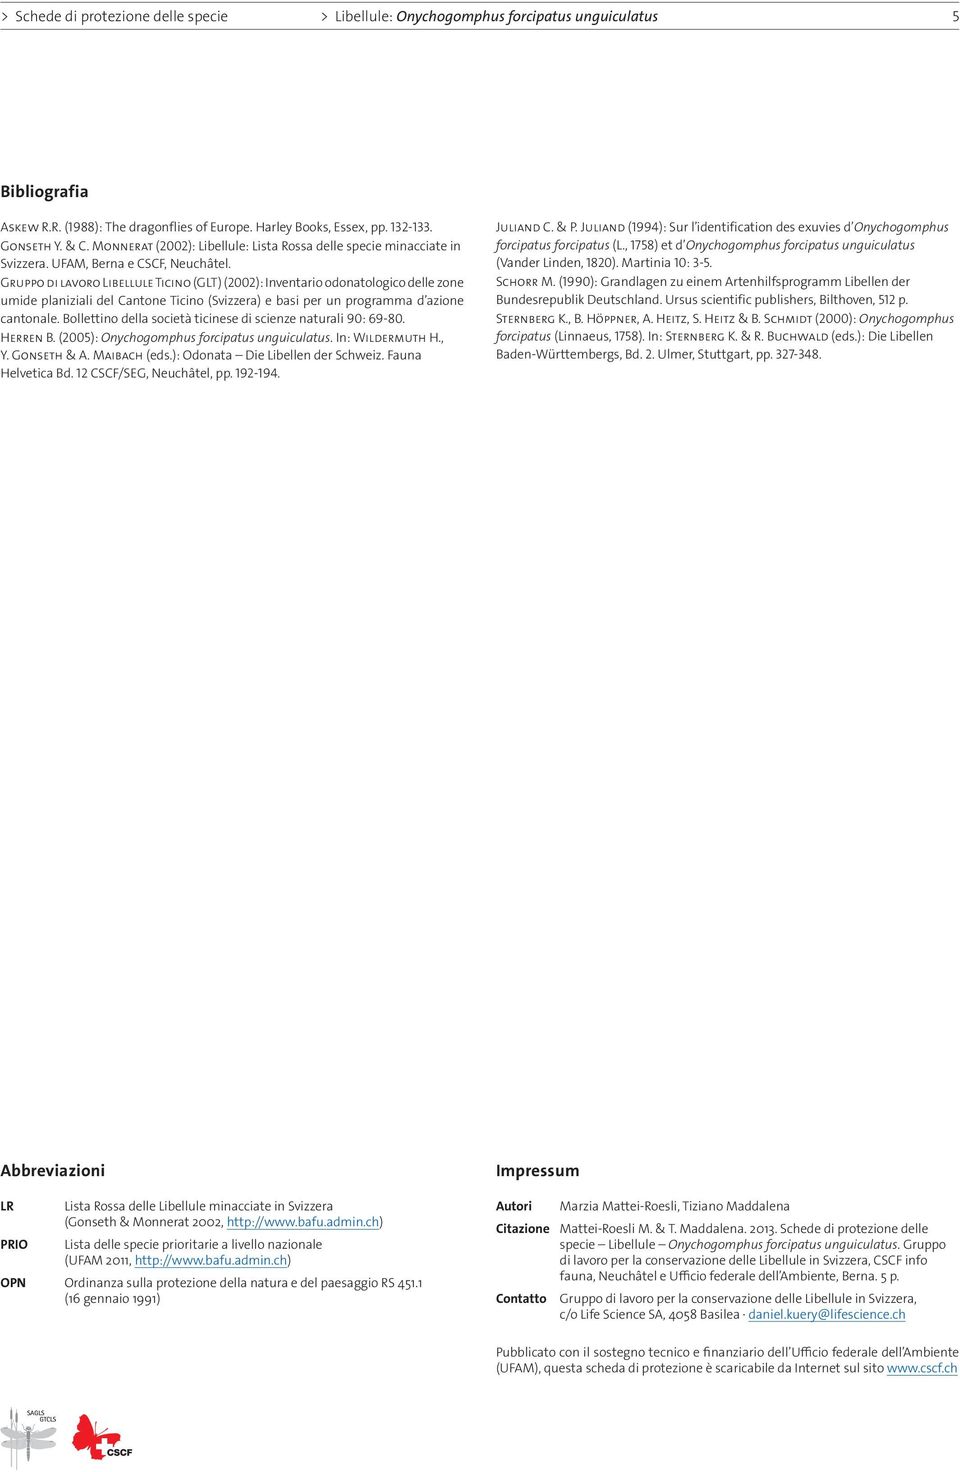 Gruppo di lavoro Libellule Ticino (GLT) (2002): Inventario odonatologico delle zone umide planiziali del Cantone Ticino (Svizzera) e basi per un programma d azione cantonale.